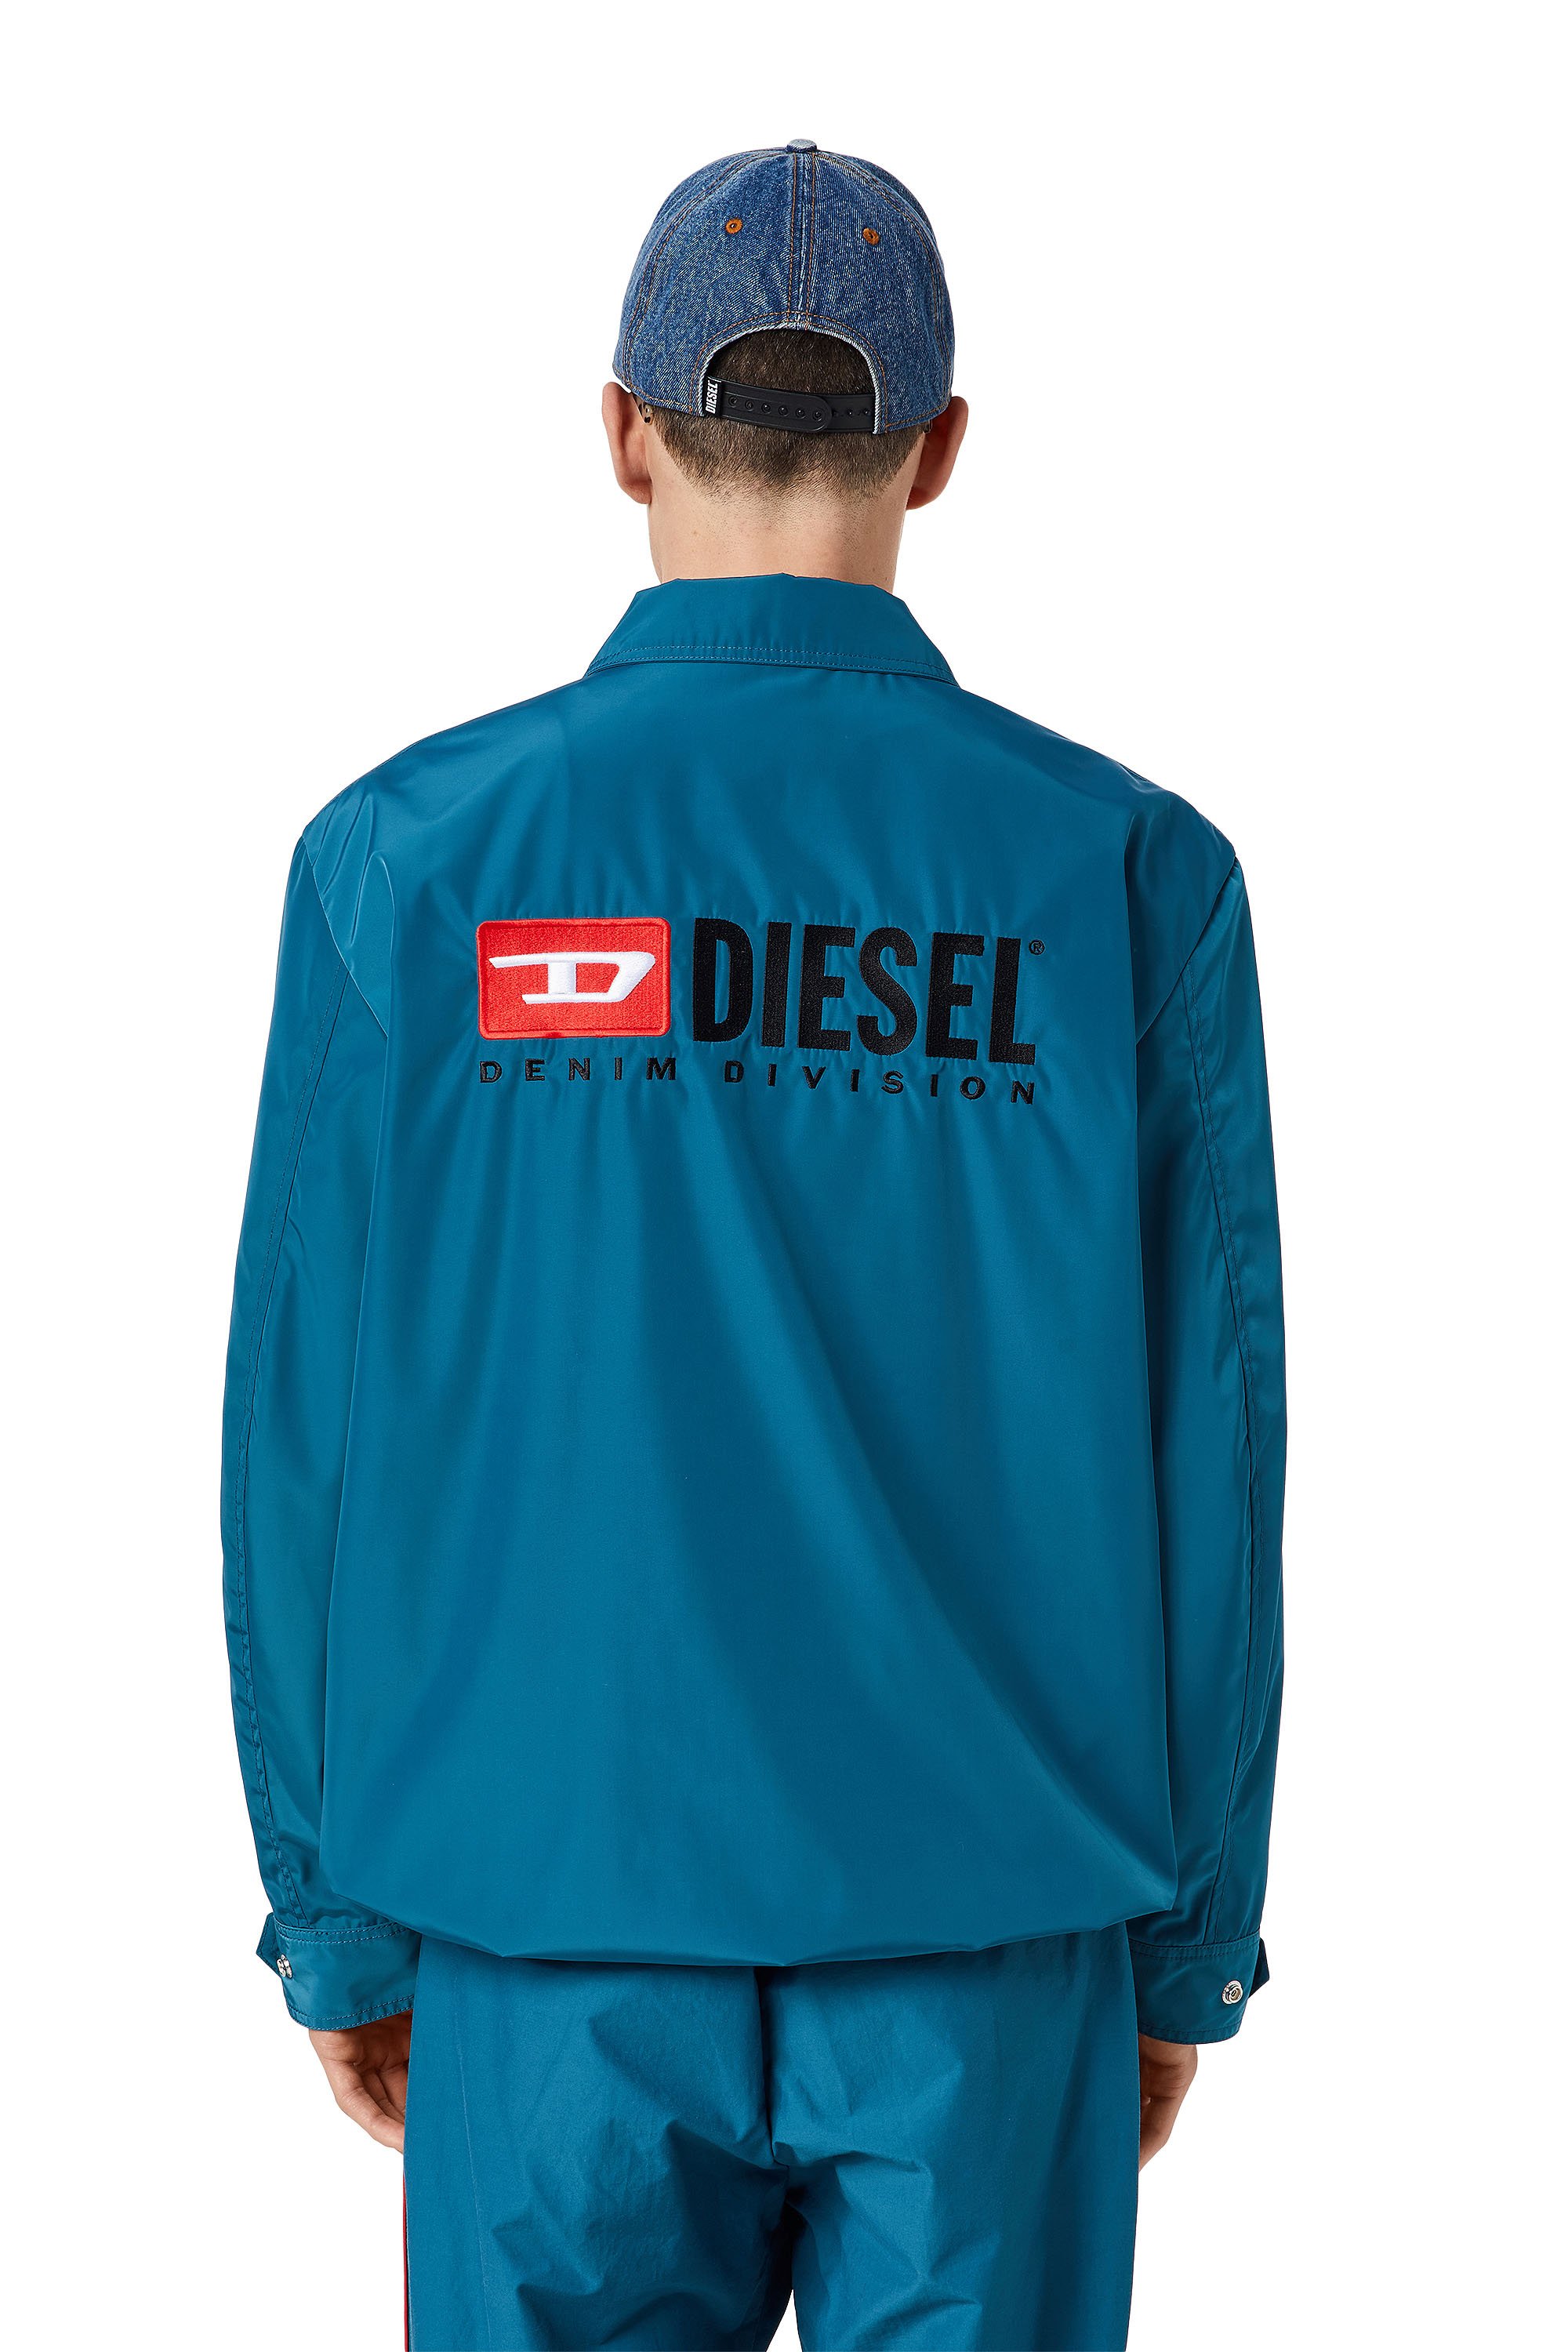 Diesel - J-COAL-NP, Blu - Image 2